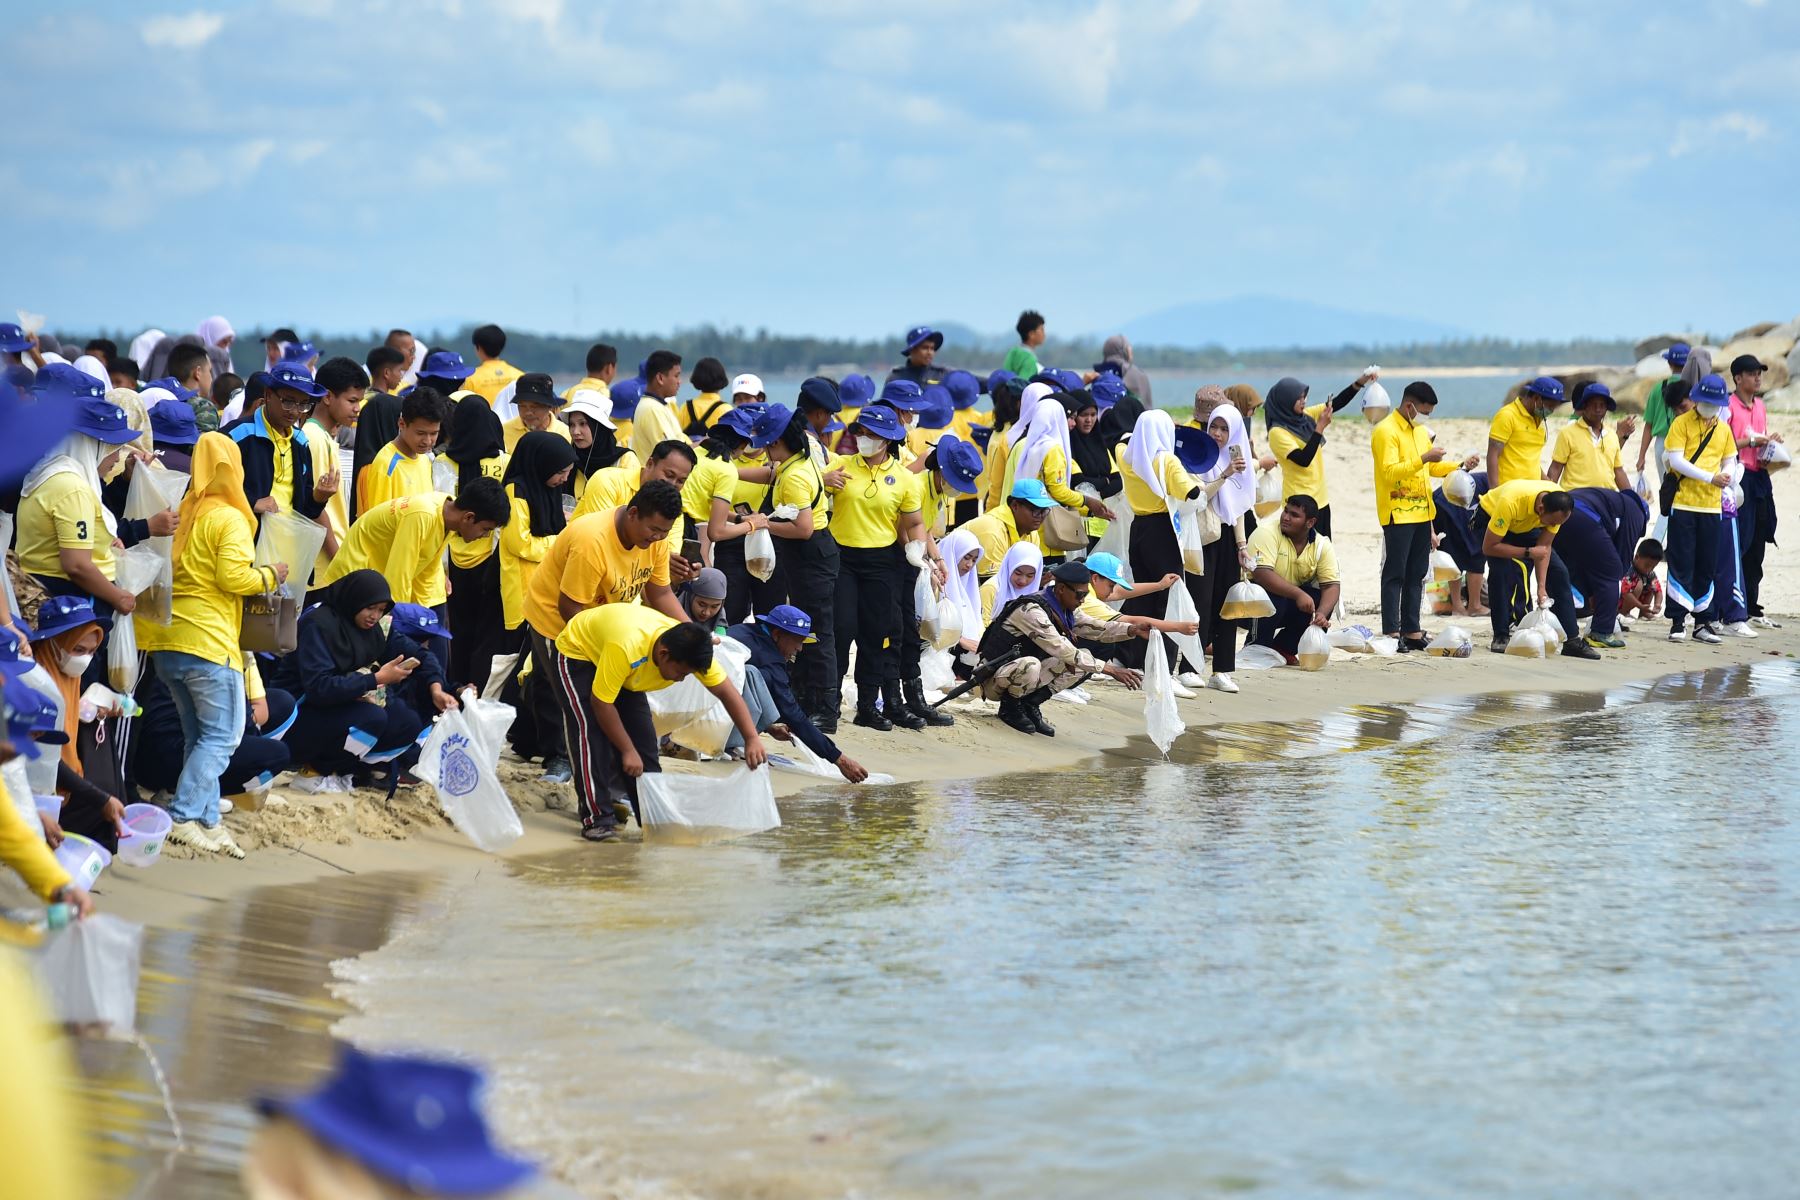 Los participantes liberan tortugas marinas en el mar durante un evento celebrado para conmemorar el Día Mundial de los Océanos en una playa de Nara, en la provincia de Narathiwat, en el sur de Tailandia.
Foto: AFP